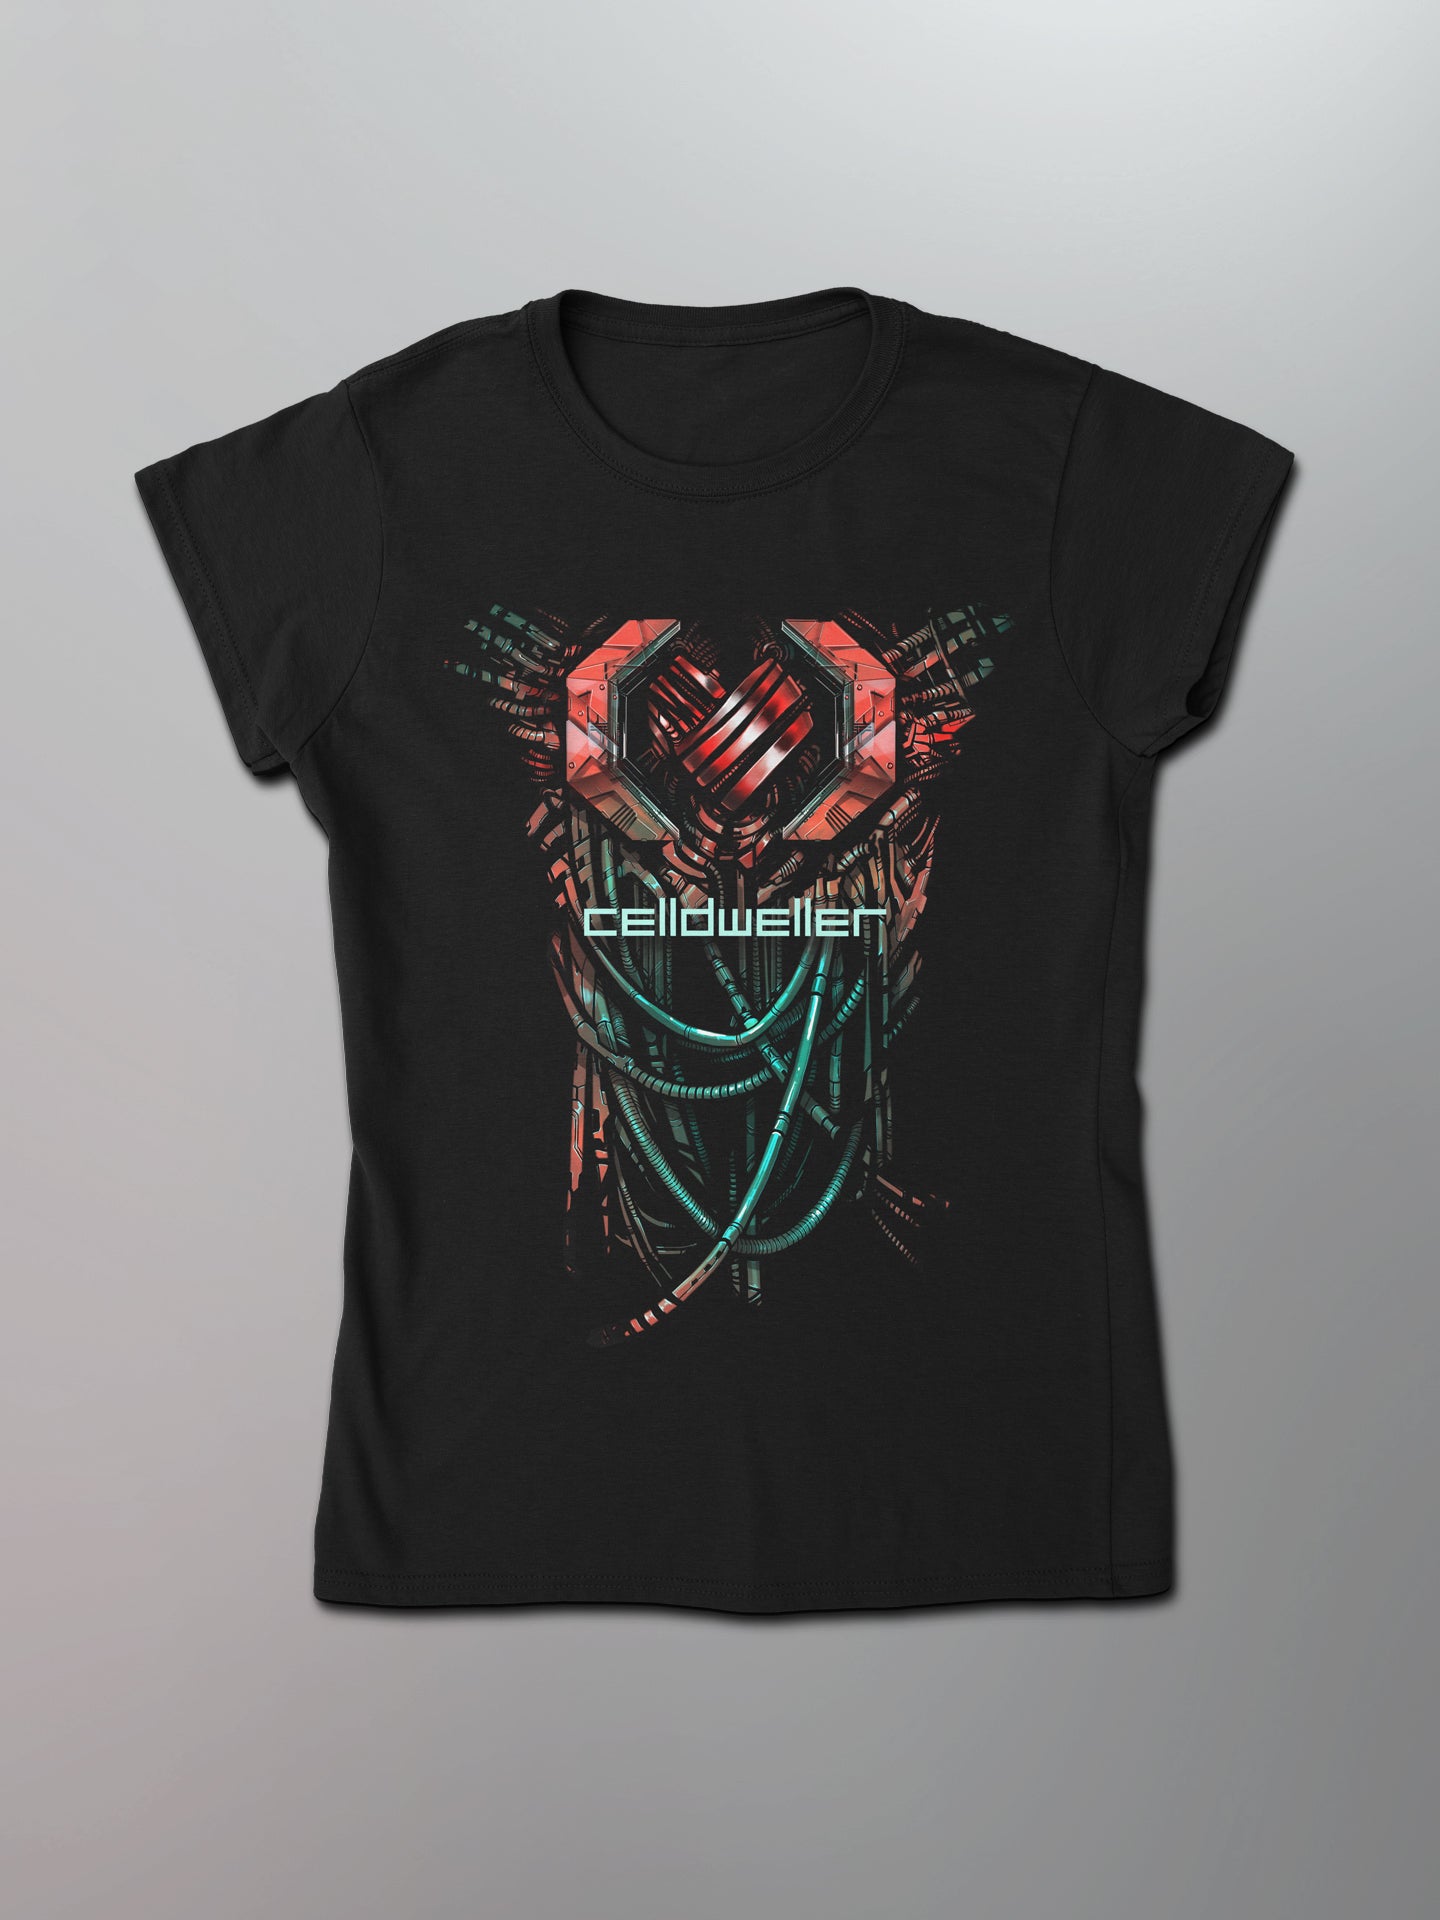 Celldweller - Heart Break Women's Shirt